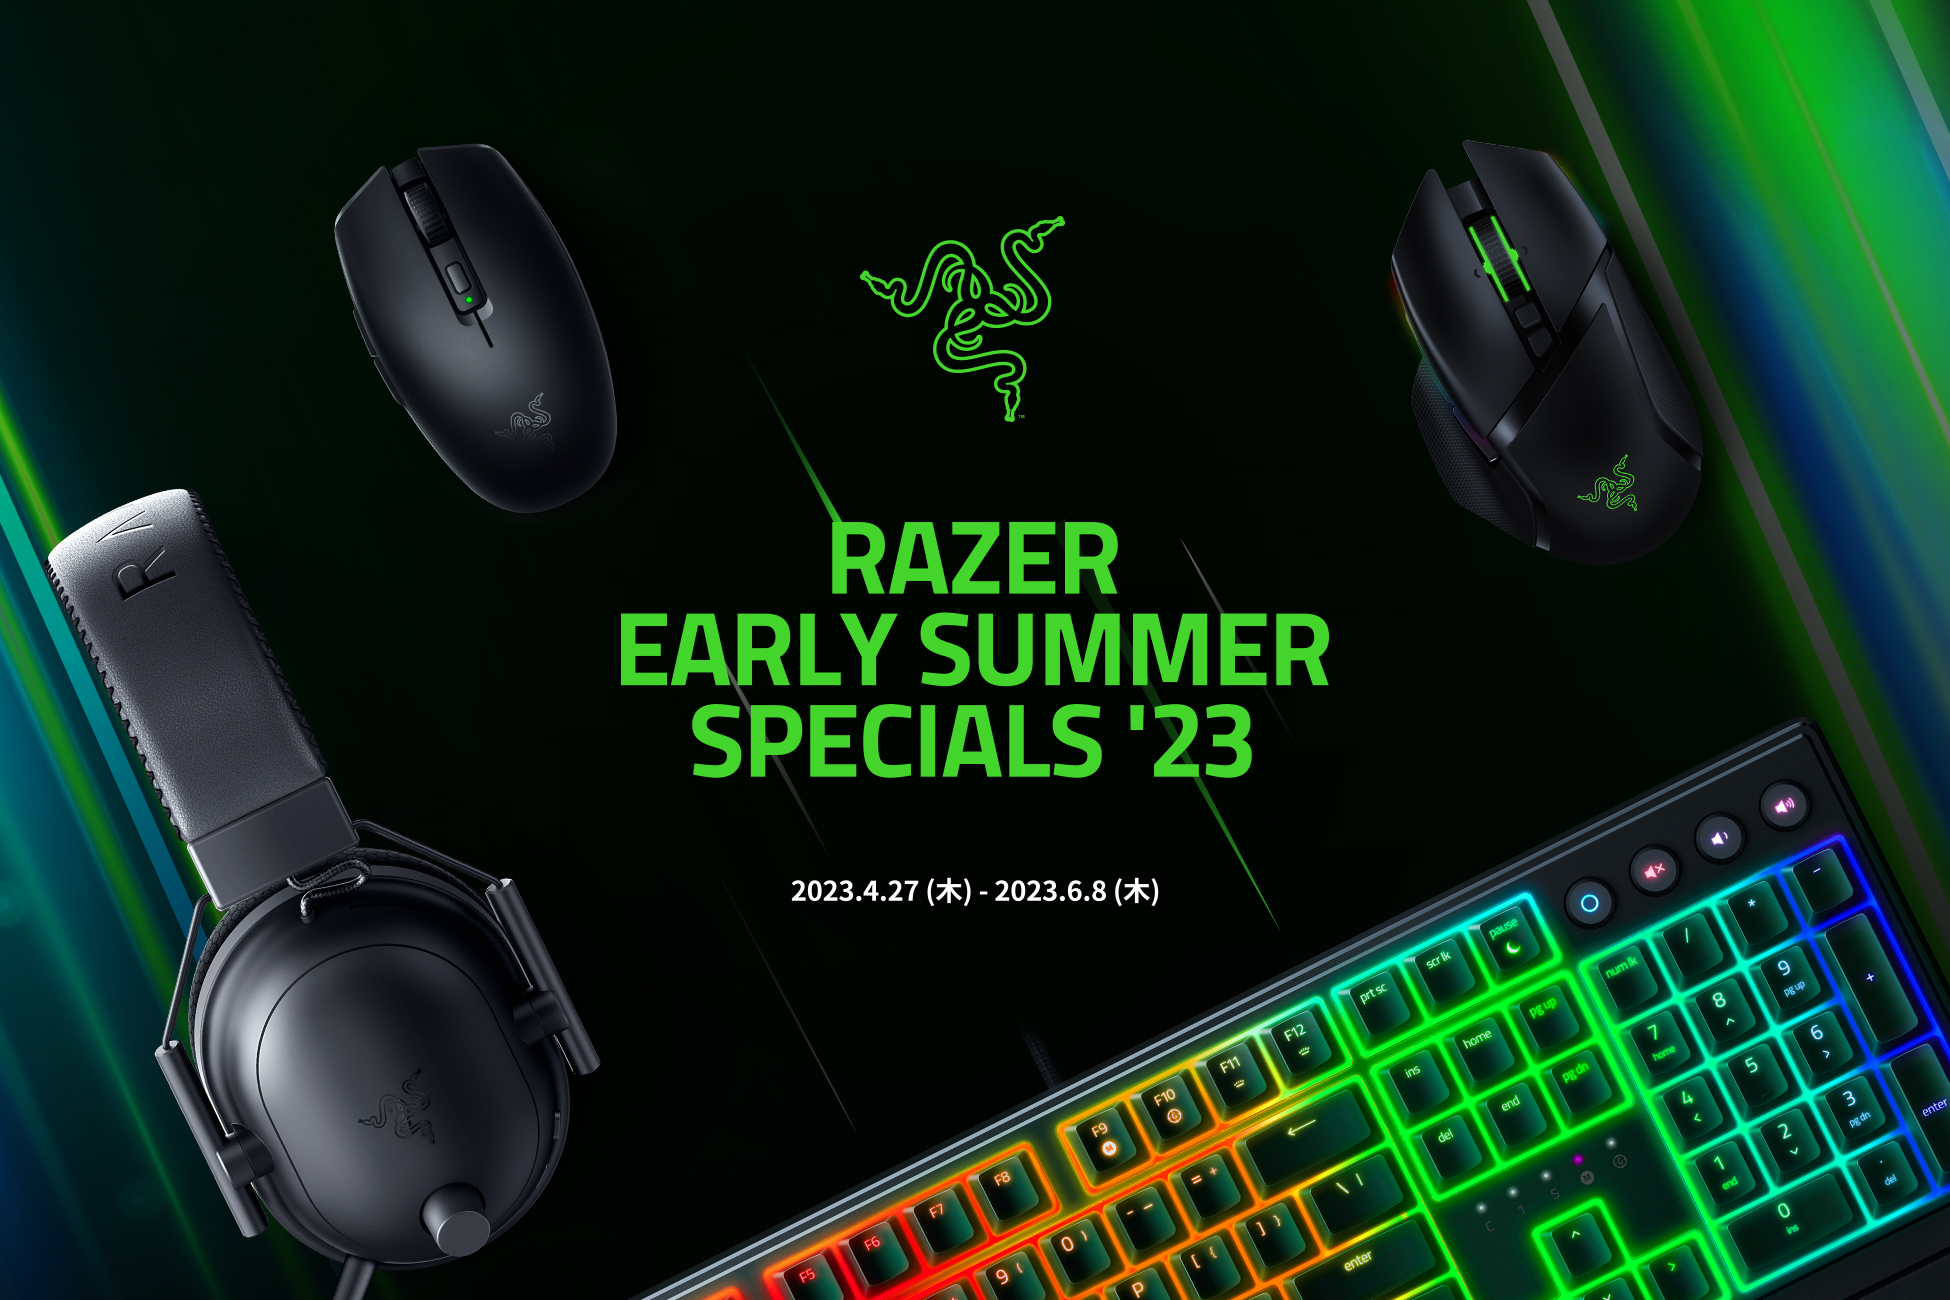 すべての人の新しいゲーミングライフを応援する
「Razer Early Summer Specials – ’23」を
4月27日(木)より開催！
Razer Bladeも期間限定の特別価格で販売中